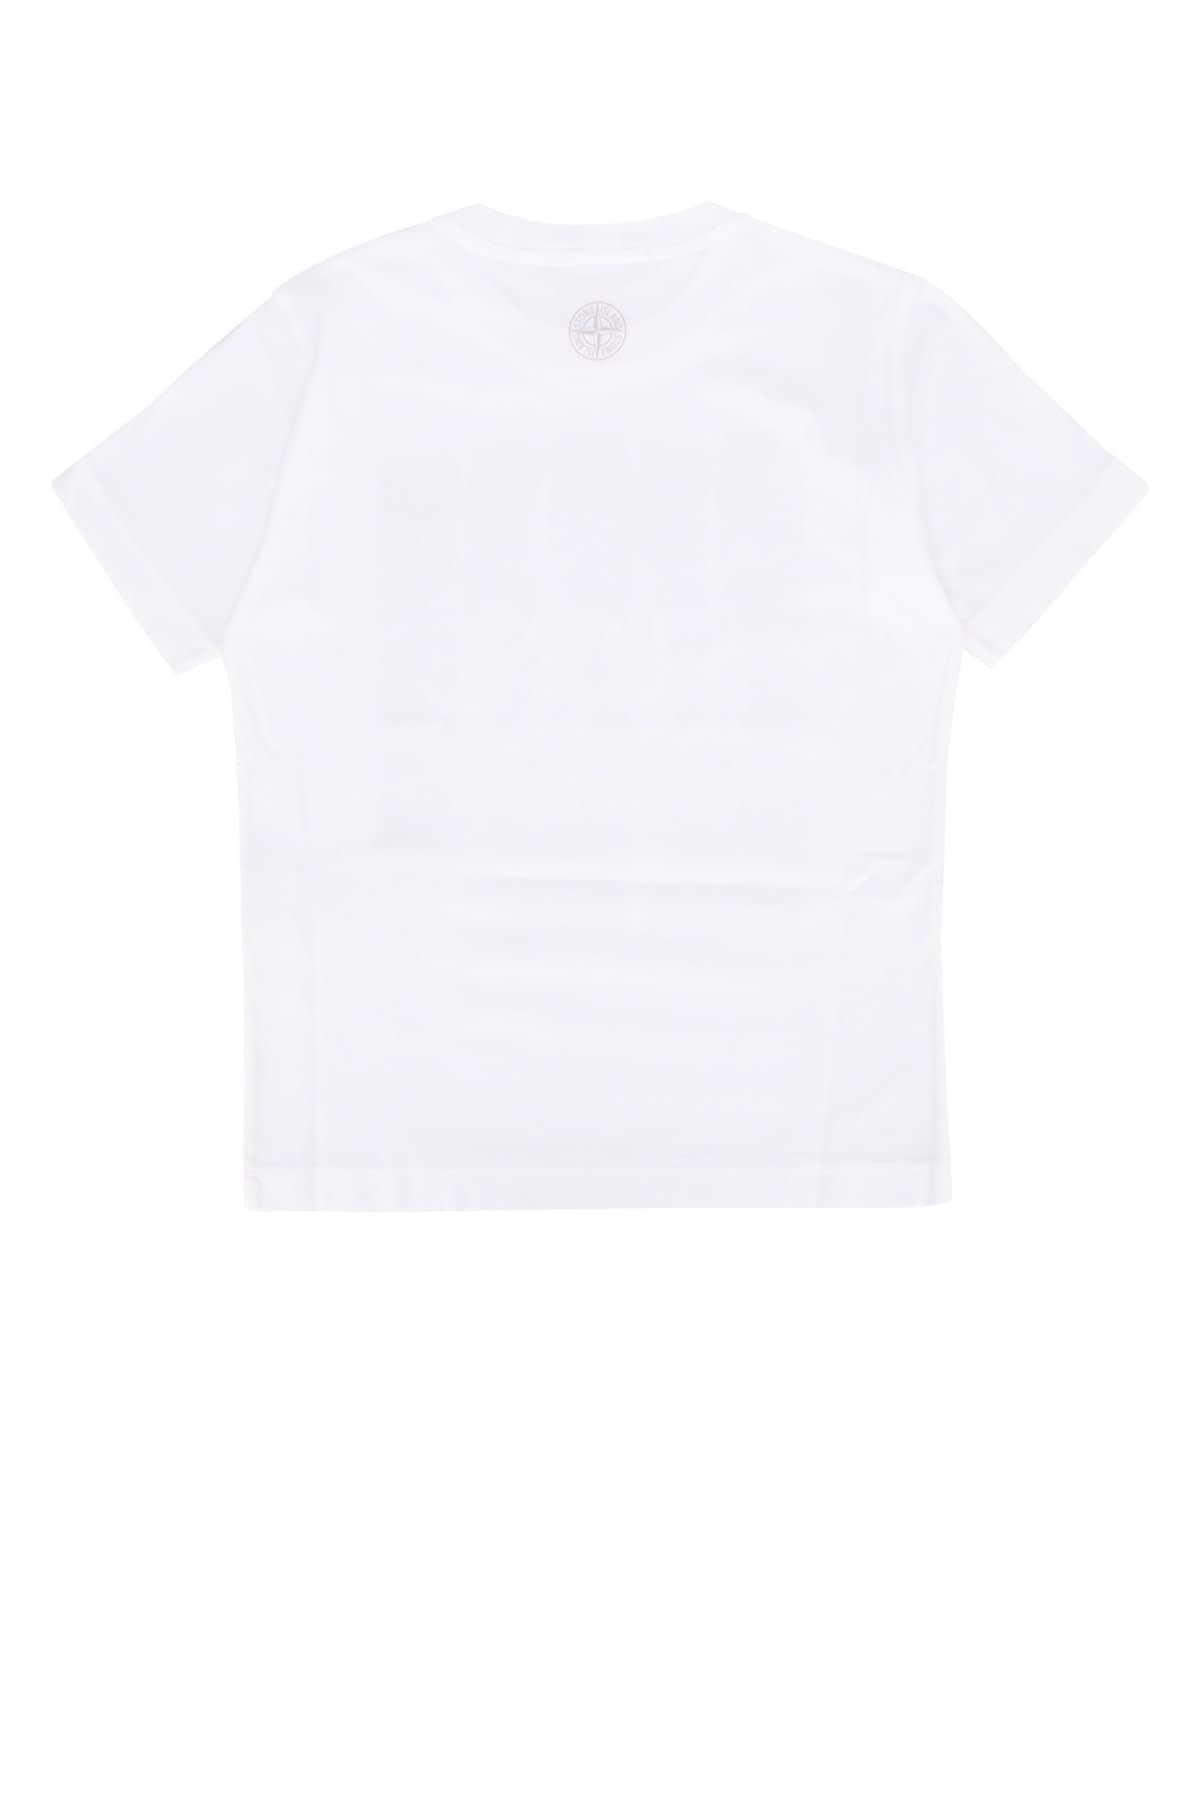 Stone Island Junior Kids' T-shirt In White